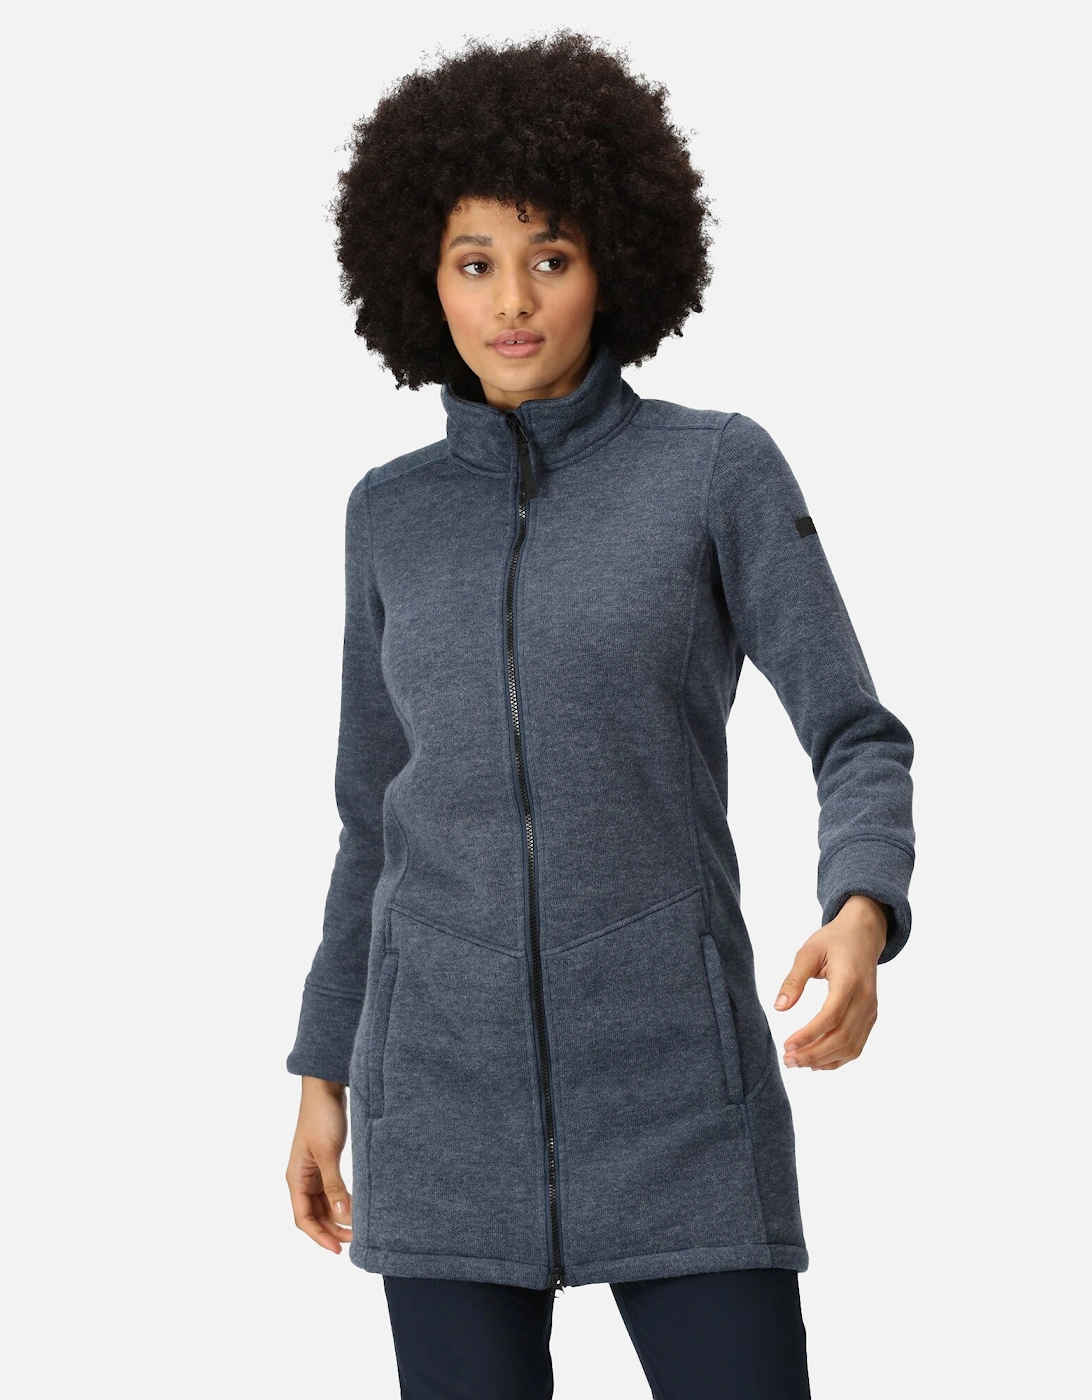 Womens/Ladies Anderby Longline Fleece Jacket